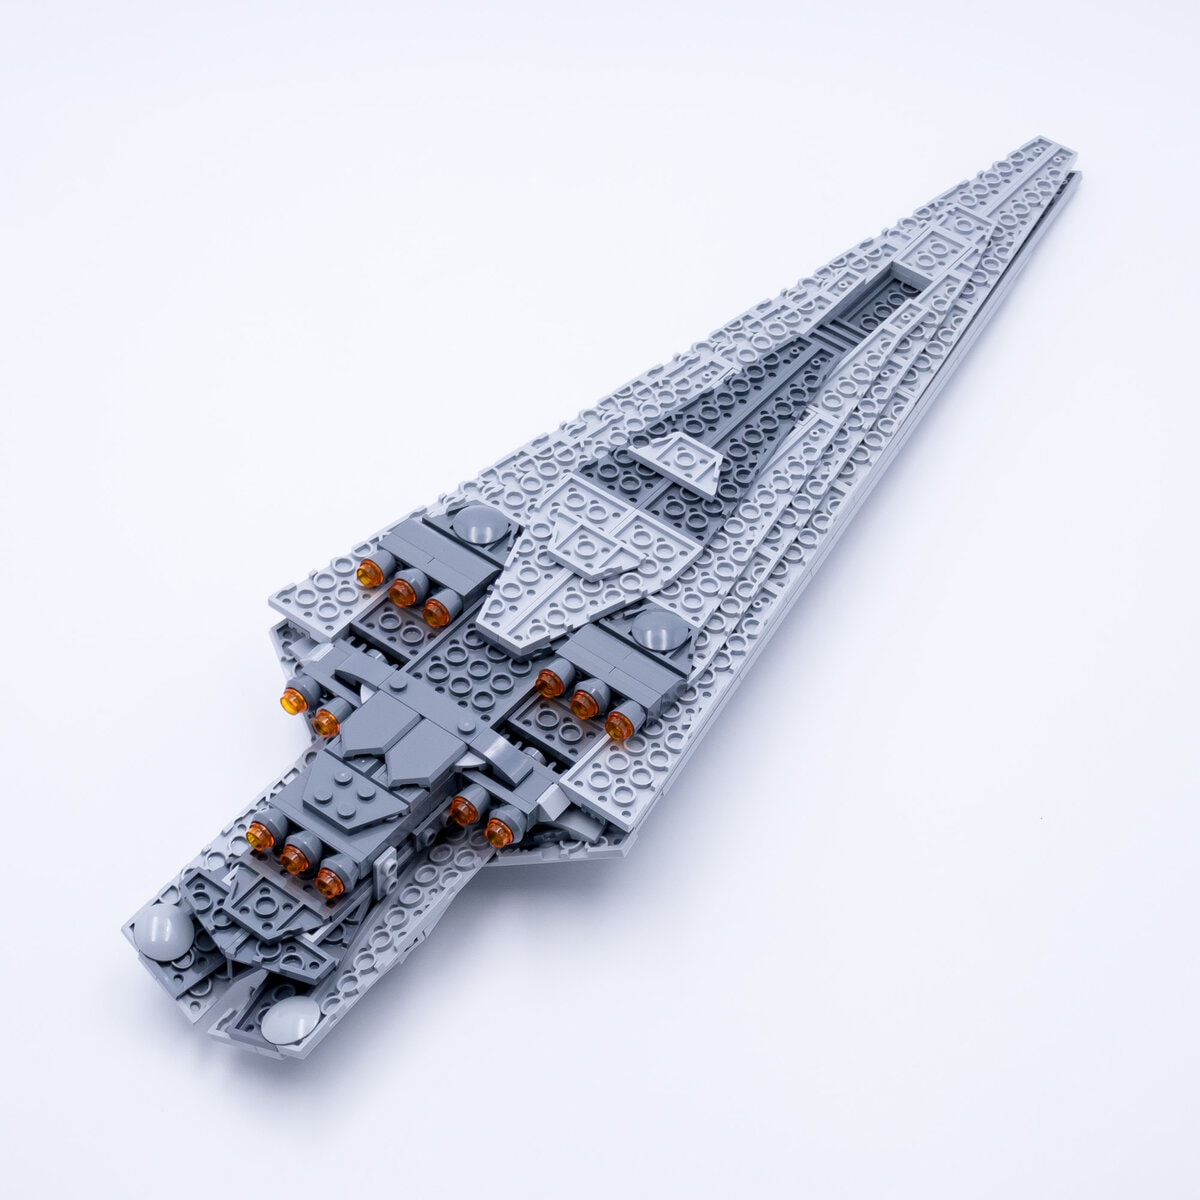 LEGO 75356 Executor Super Star Destroyer précommandes épuisées